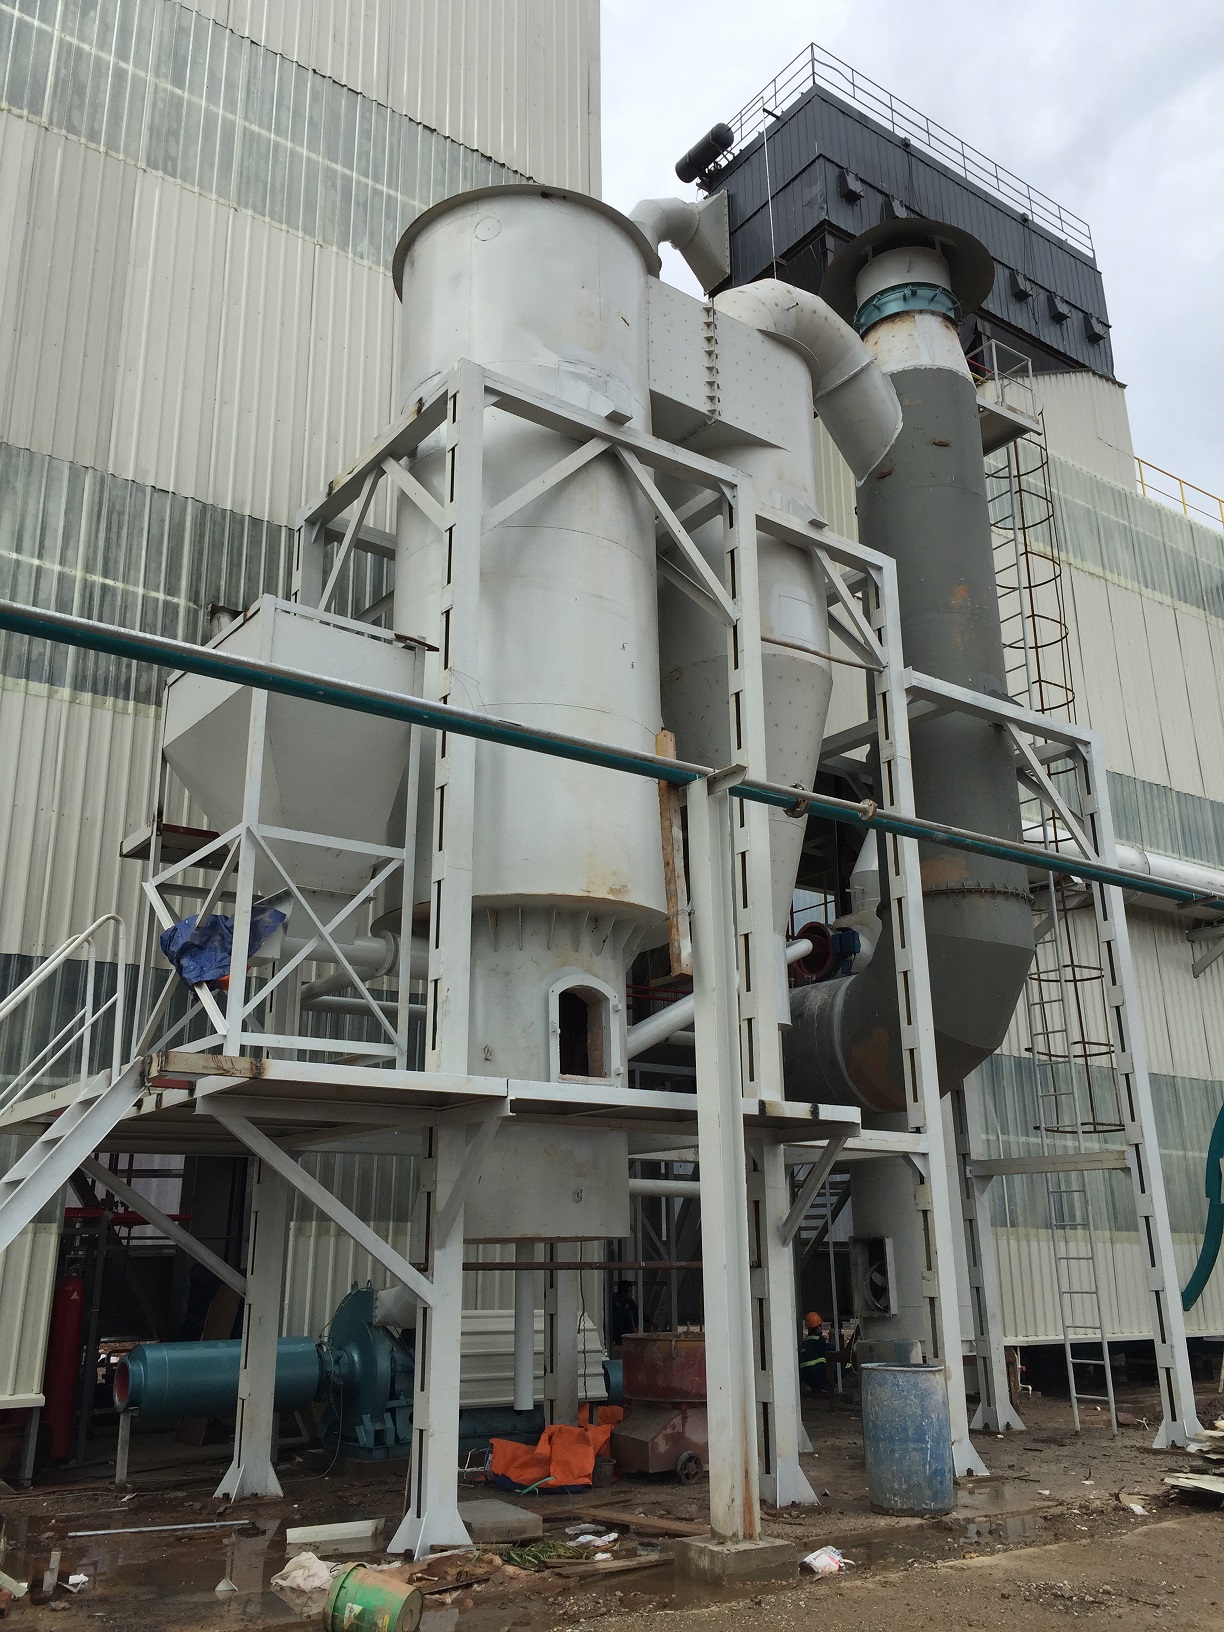 产品 煤粉炉   jdk系列热风炉,是新型高效燃煤热风炉,主要应用于大